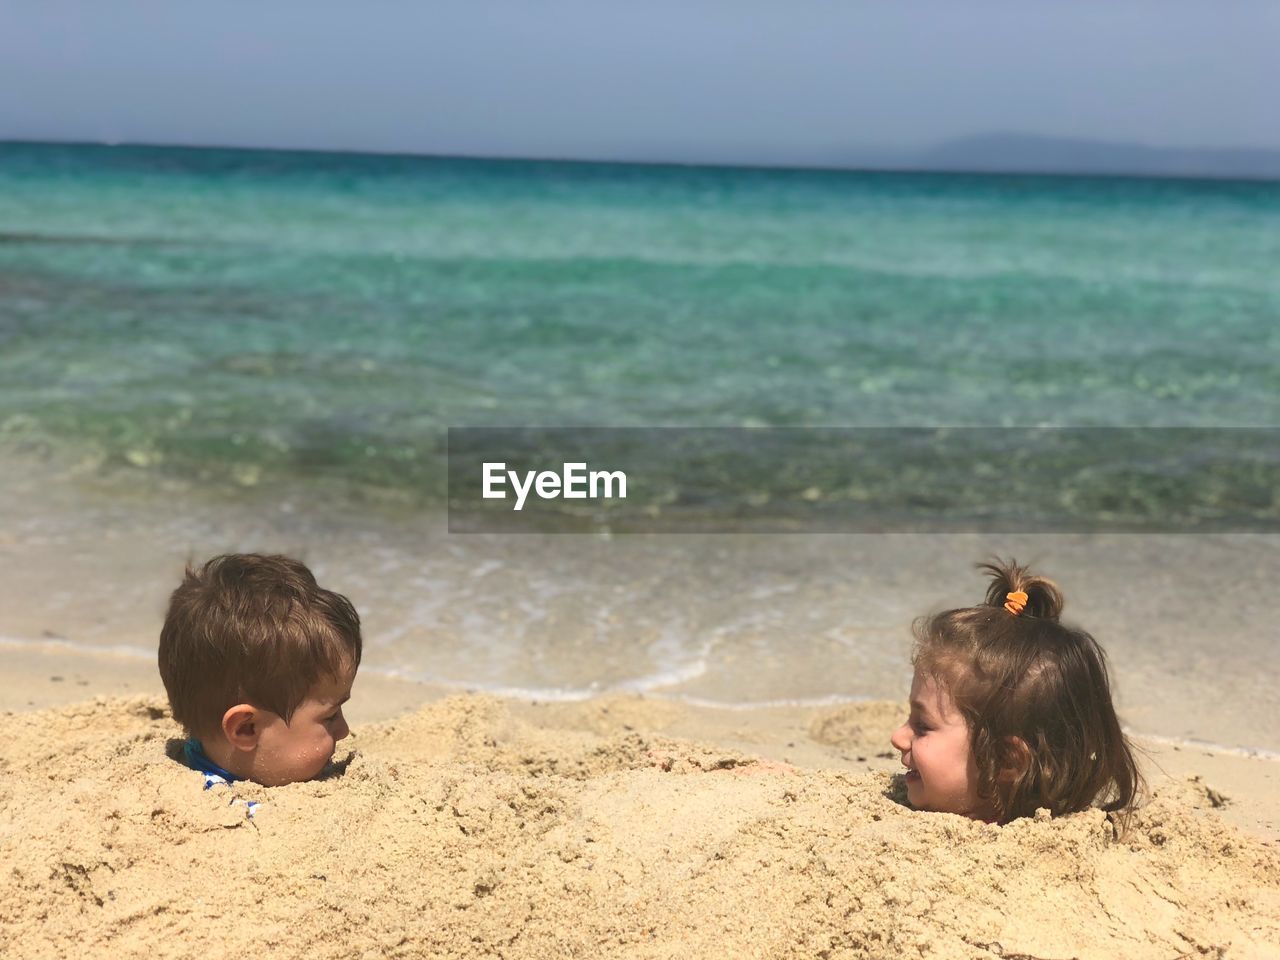 Siblings buried in sand at beach